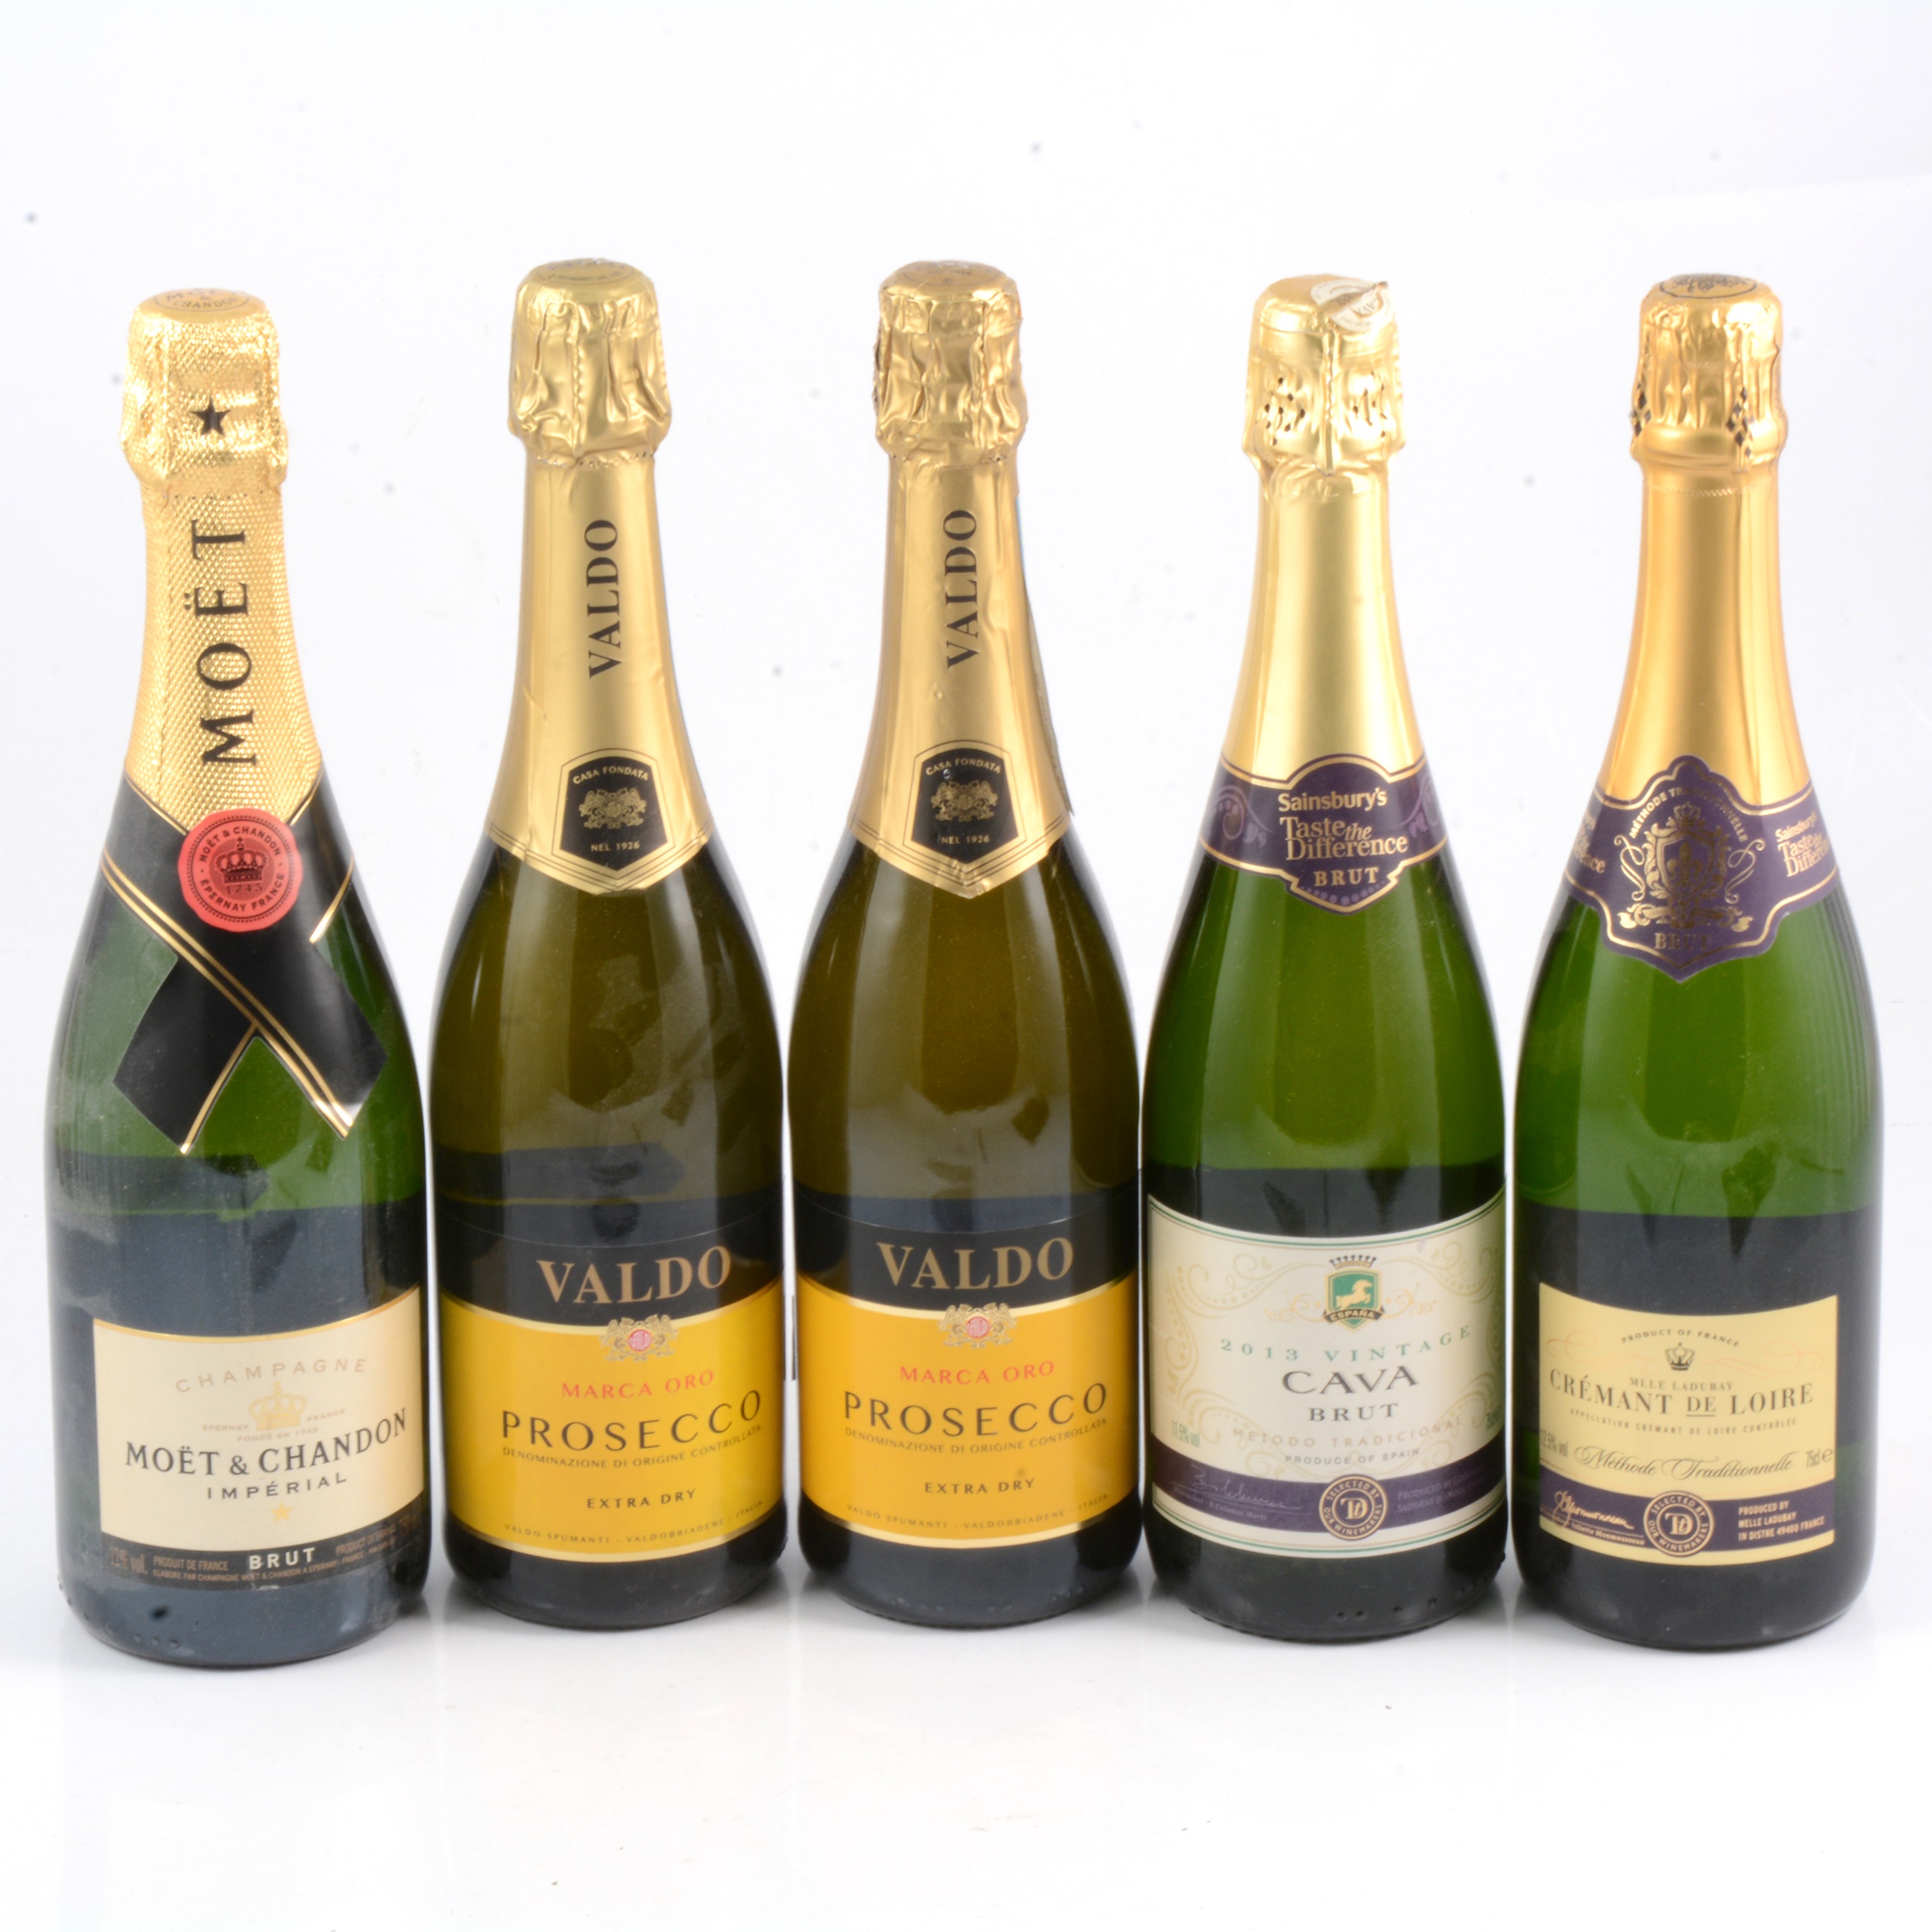 Five bottles of sparkling wine, including Moet champagne